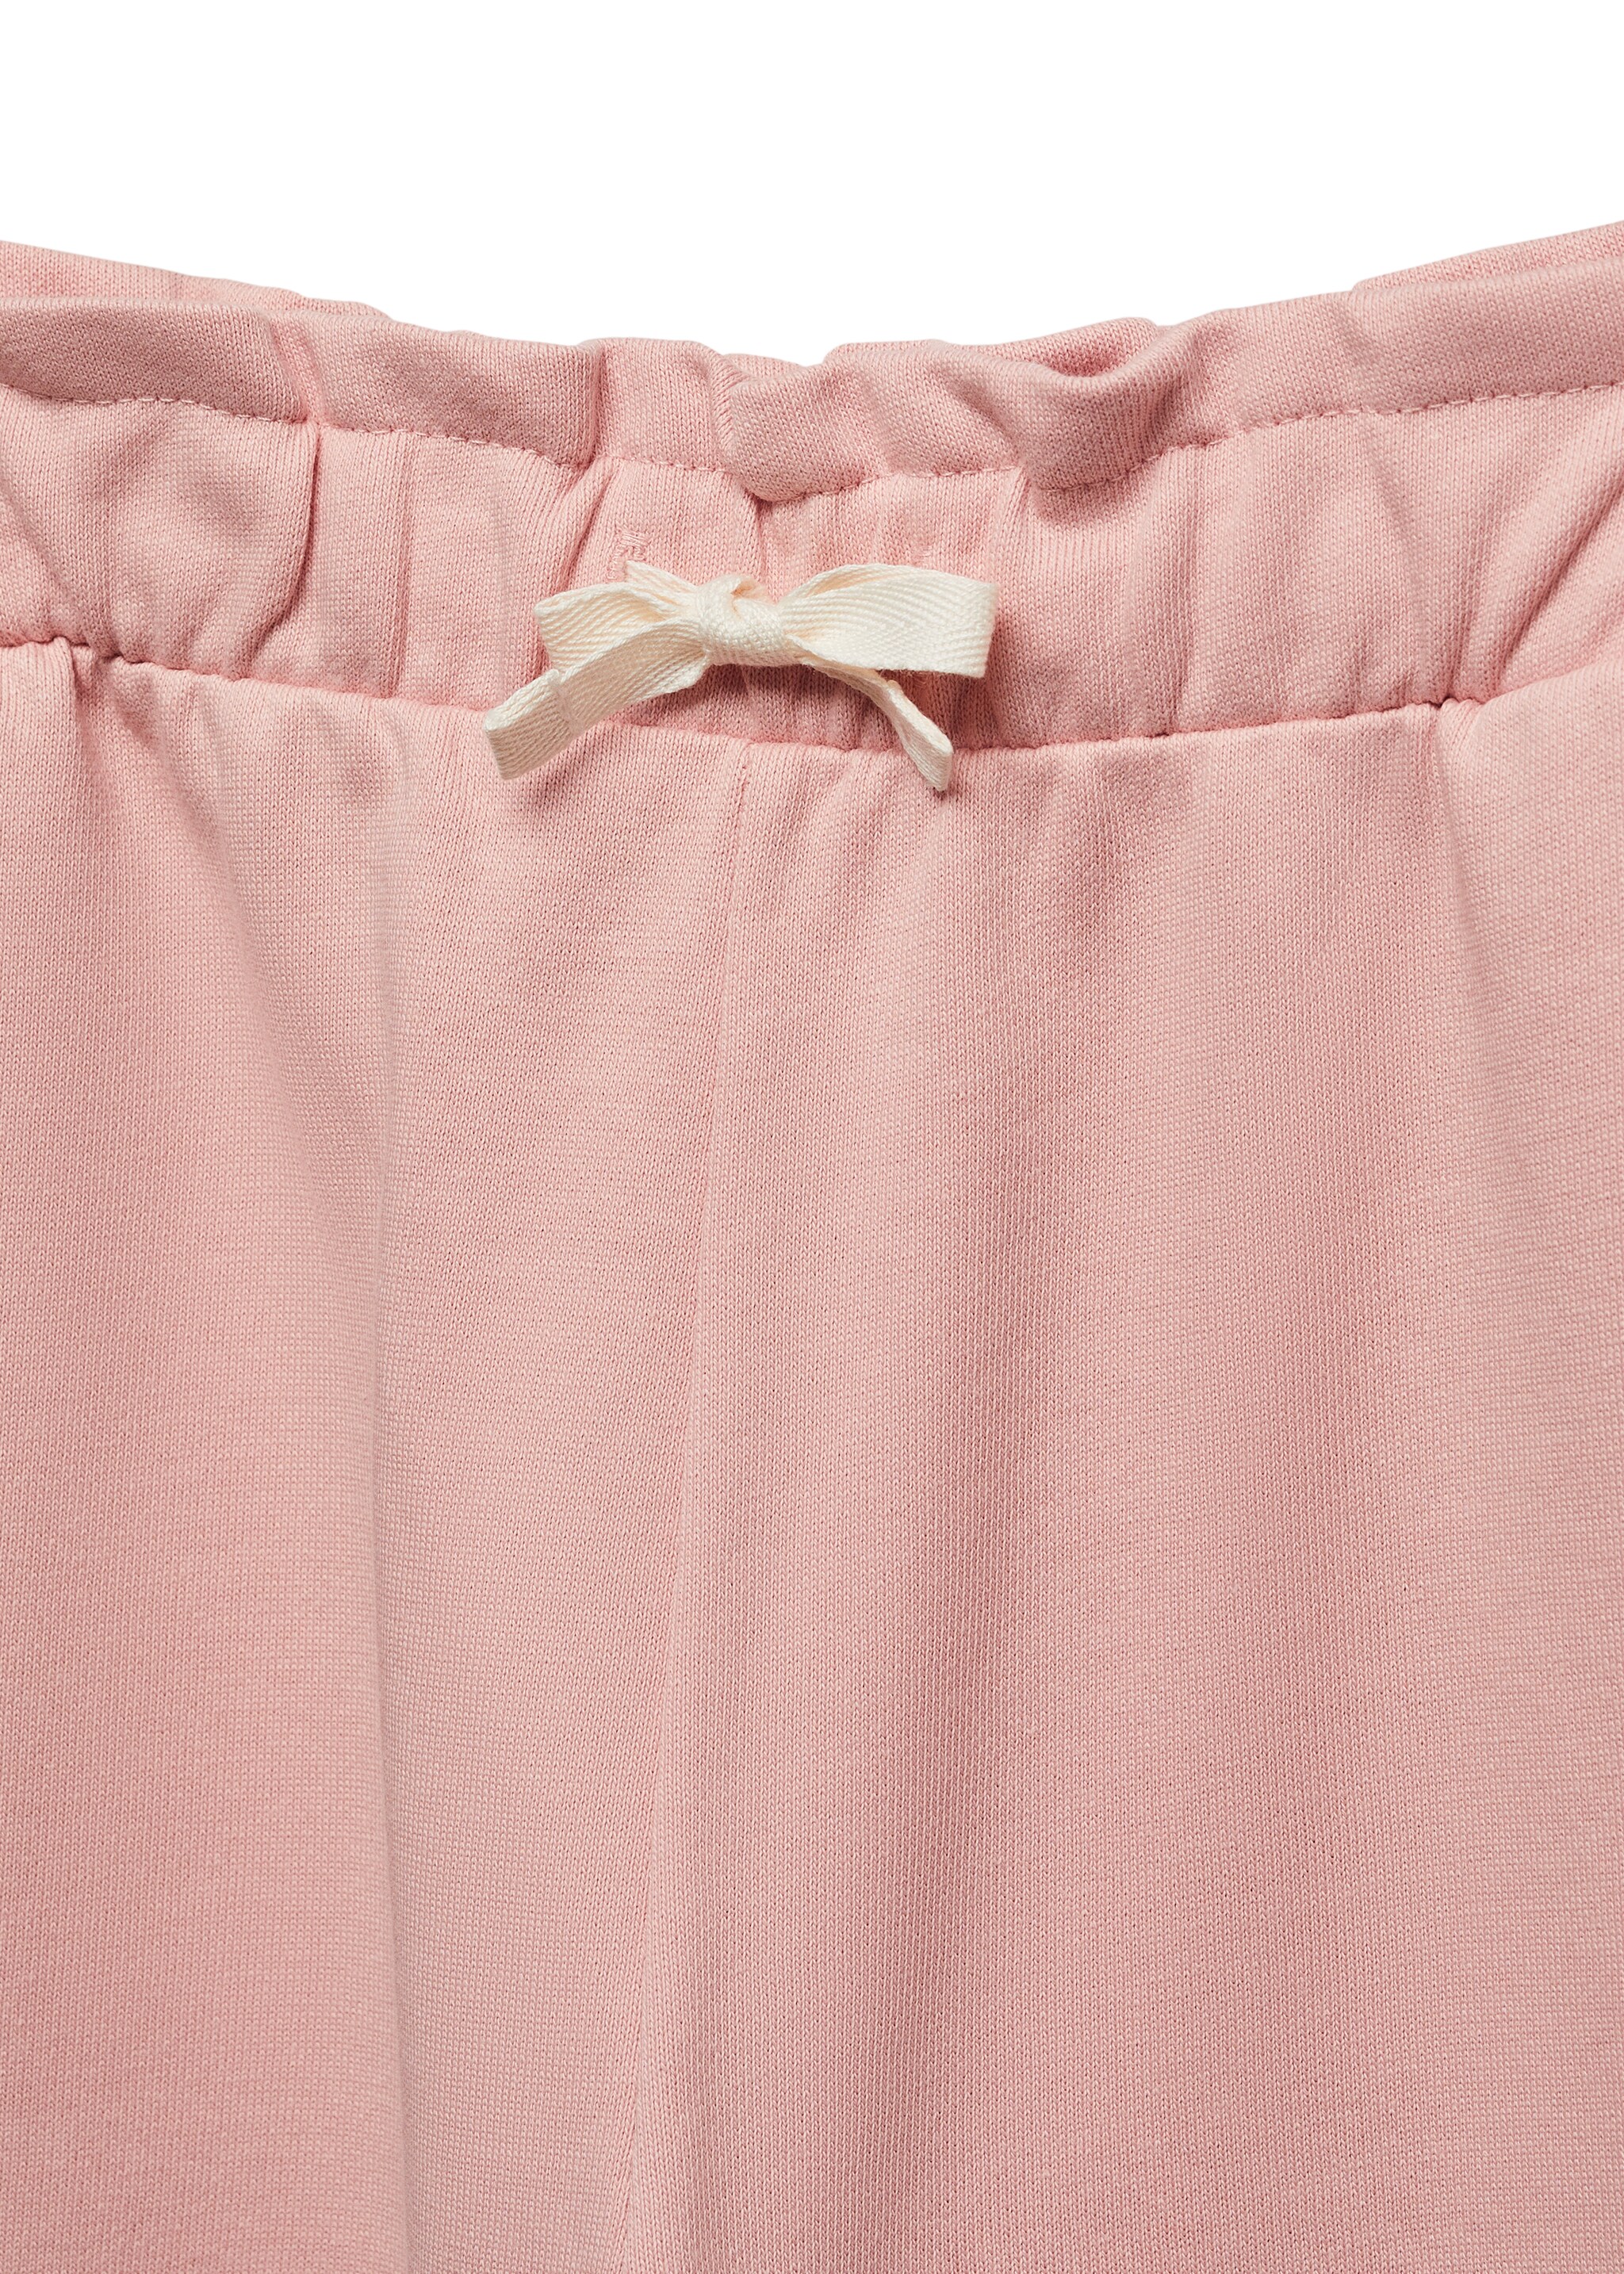 Pantalón culotte algodón - Detalle del artículo 8